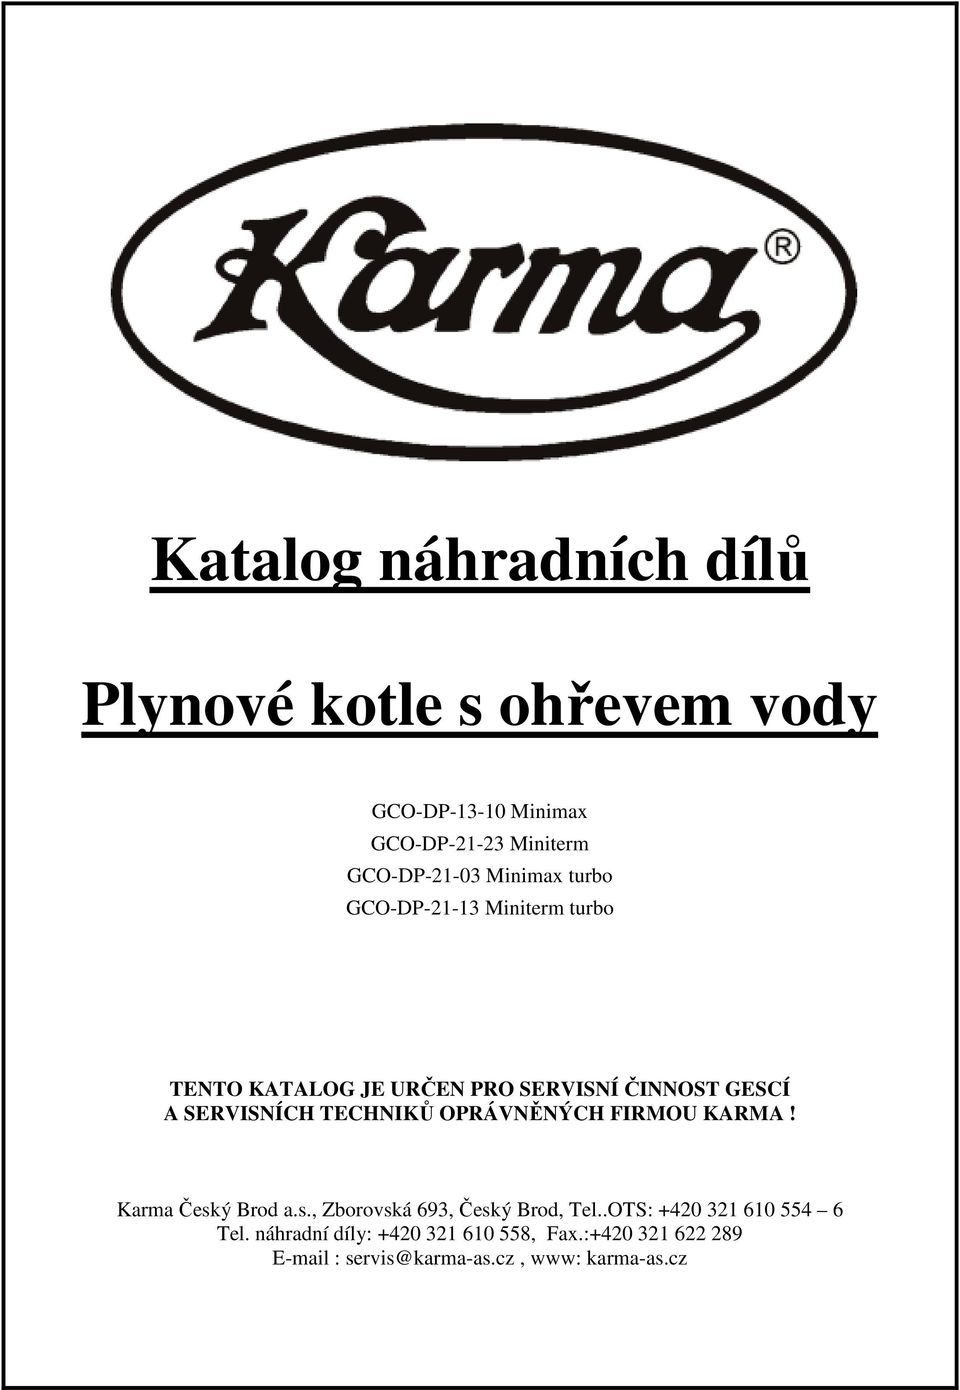 FIRMOU KARMA! Karma Český Brod a.s., Zborovská 693, Český Brod, Tel..OTS: +420 32 60 554 6 Tel.